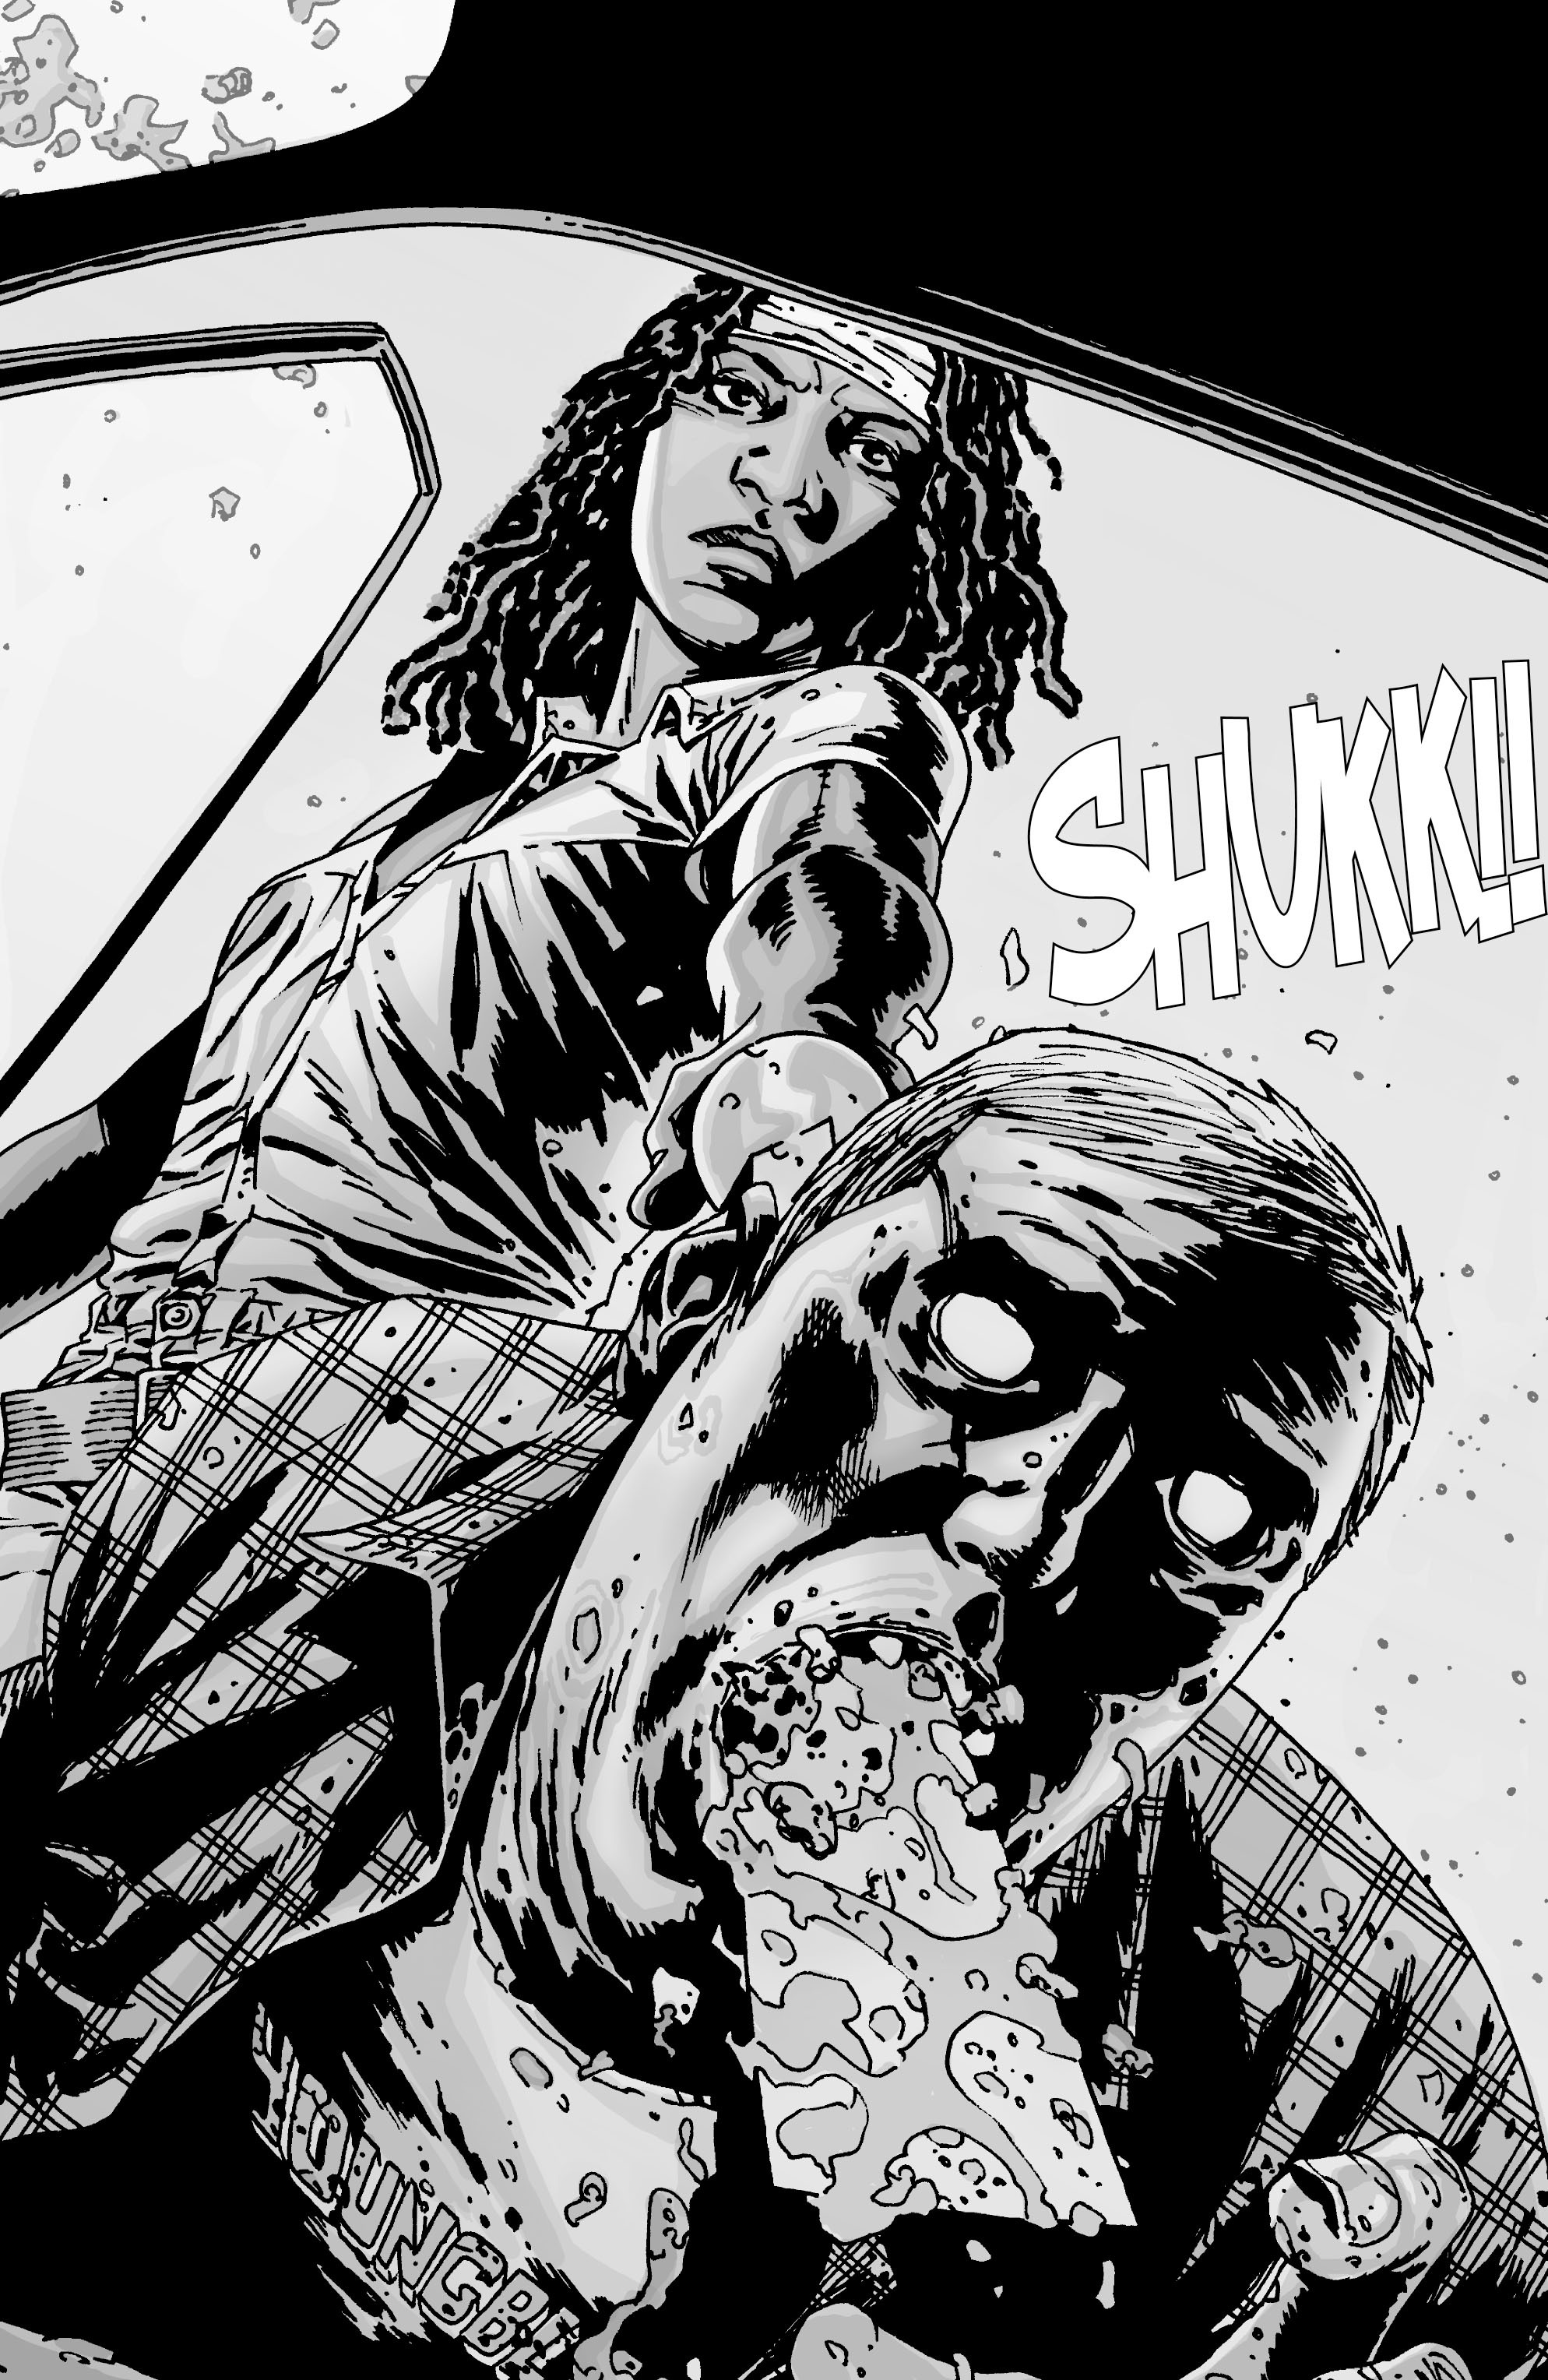 Read online The Walking Dead comic -  Issue #52 - 10